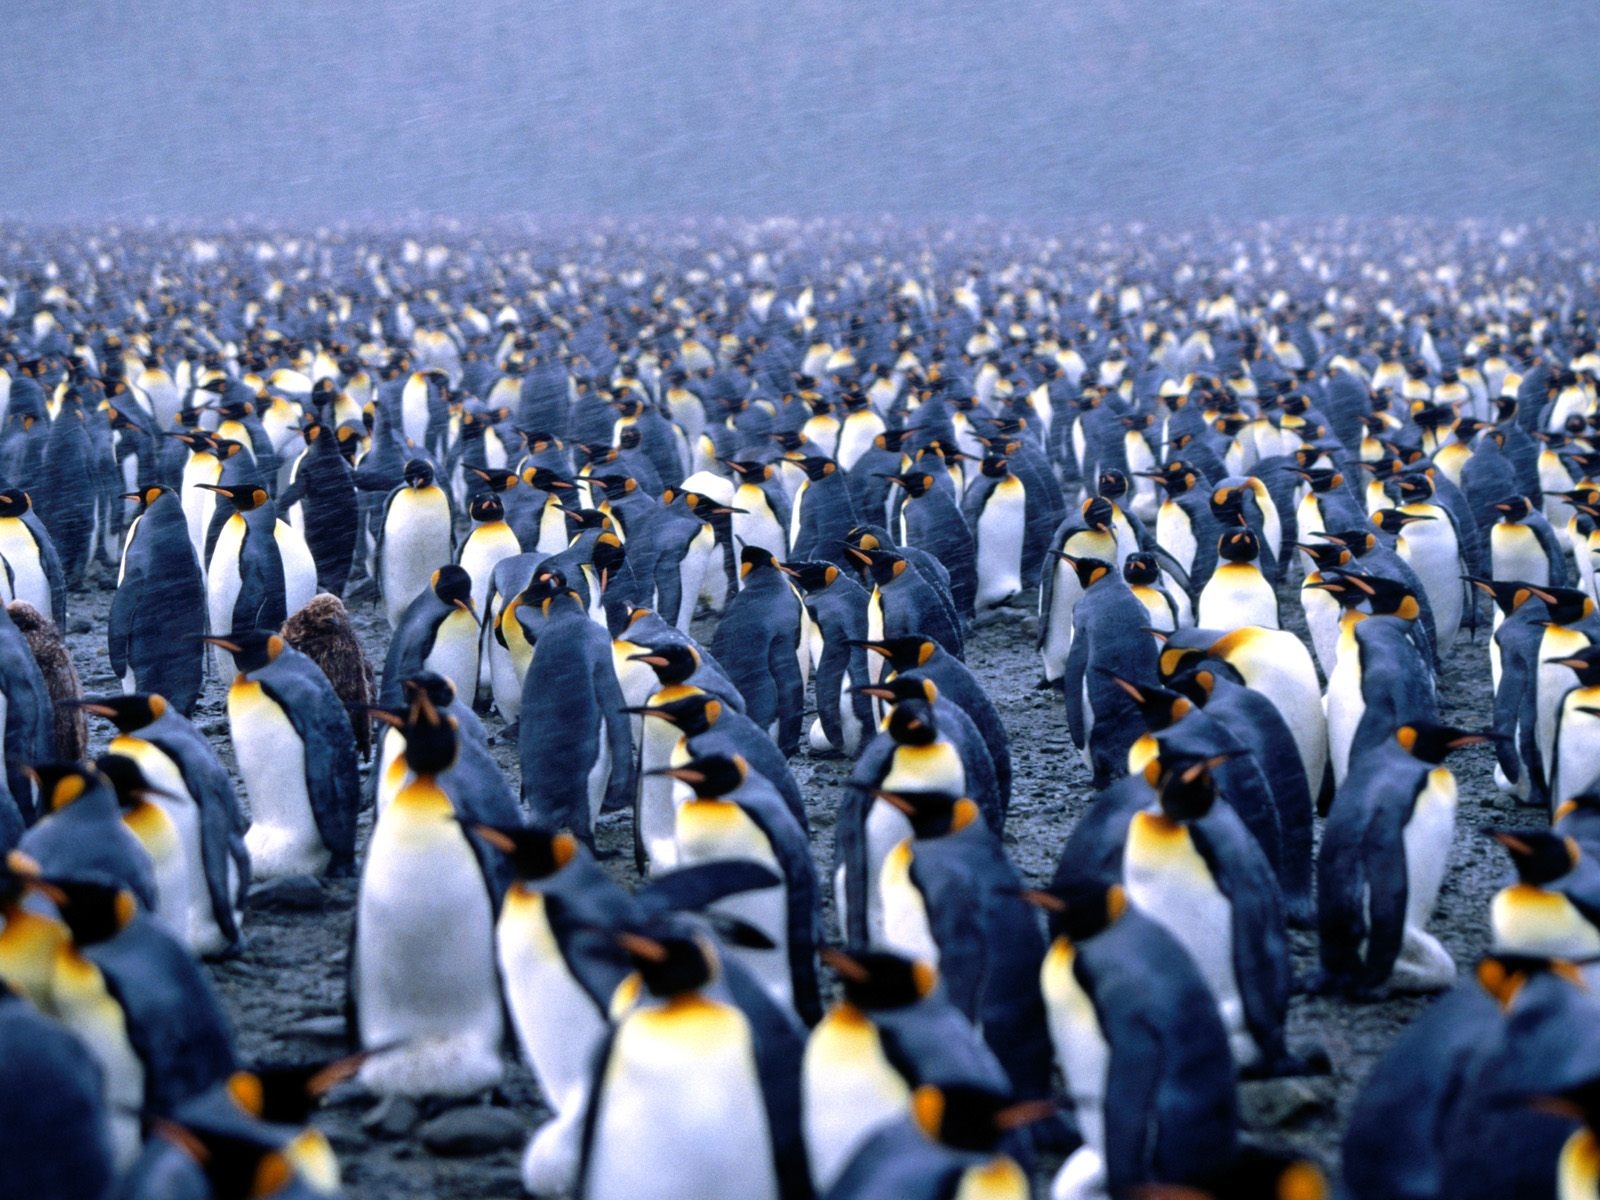 Fond d'ecran Foule de pingouins